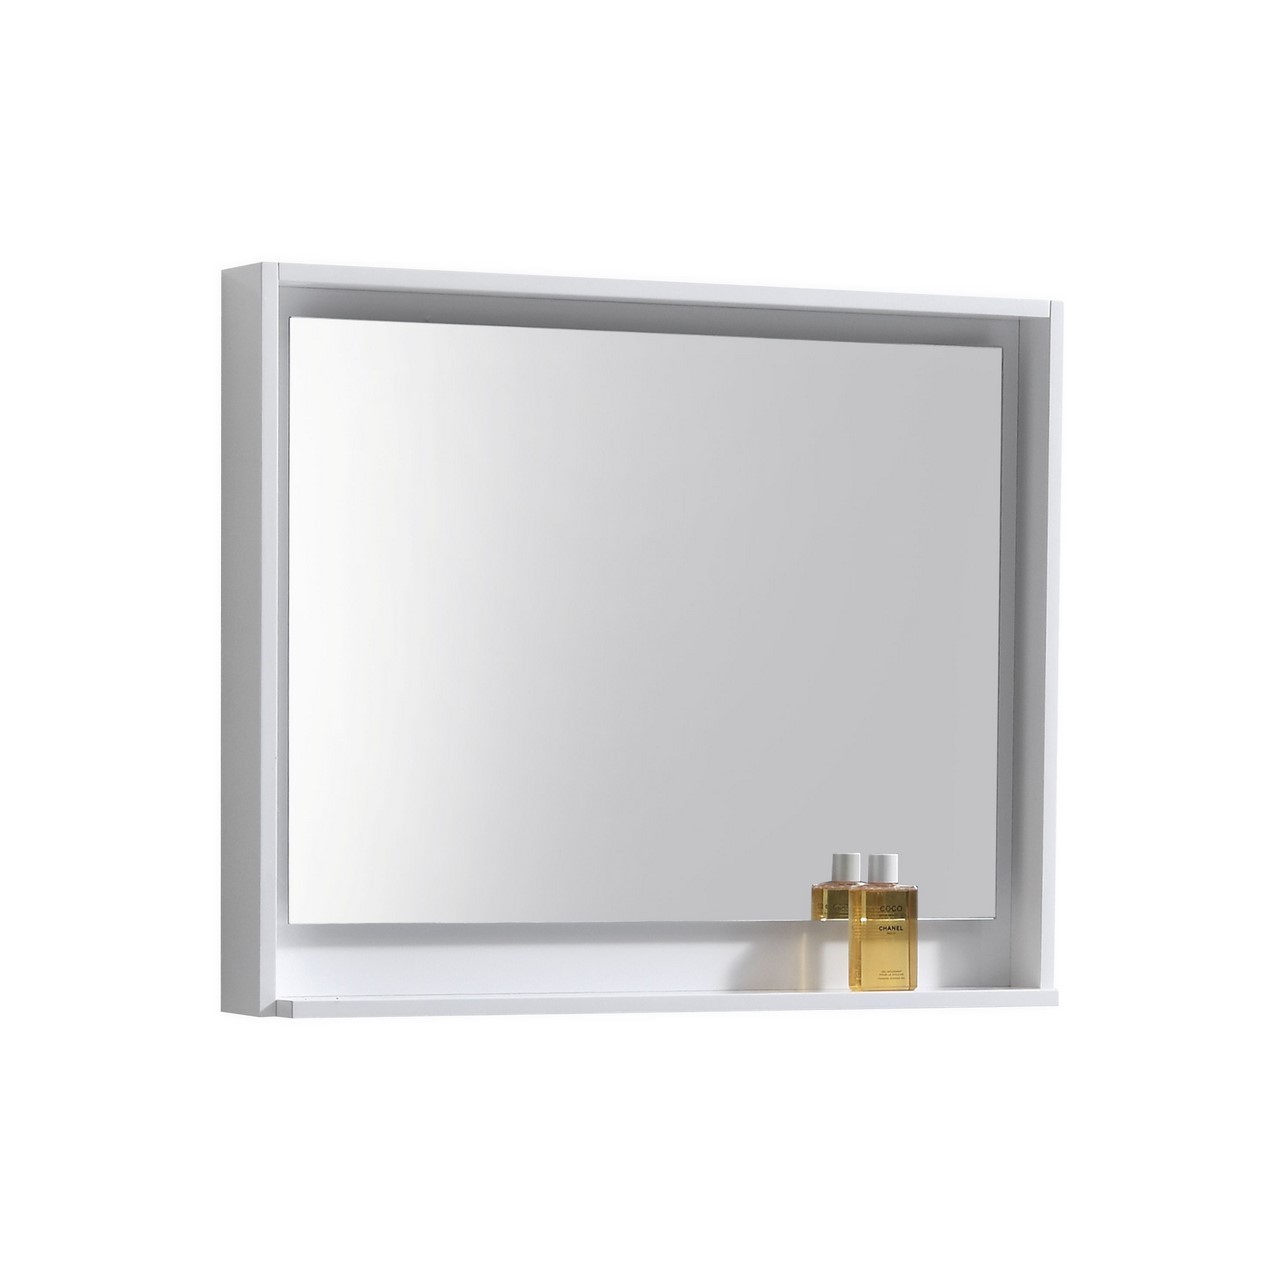 Bosco 36" Framed Mirror With Shelve - Gloss White Finish